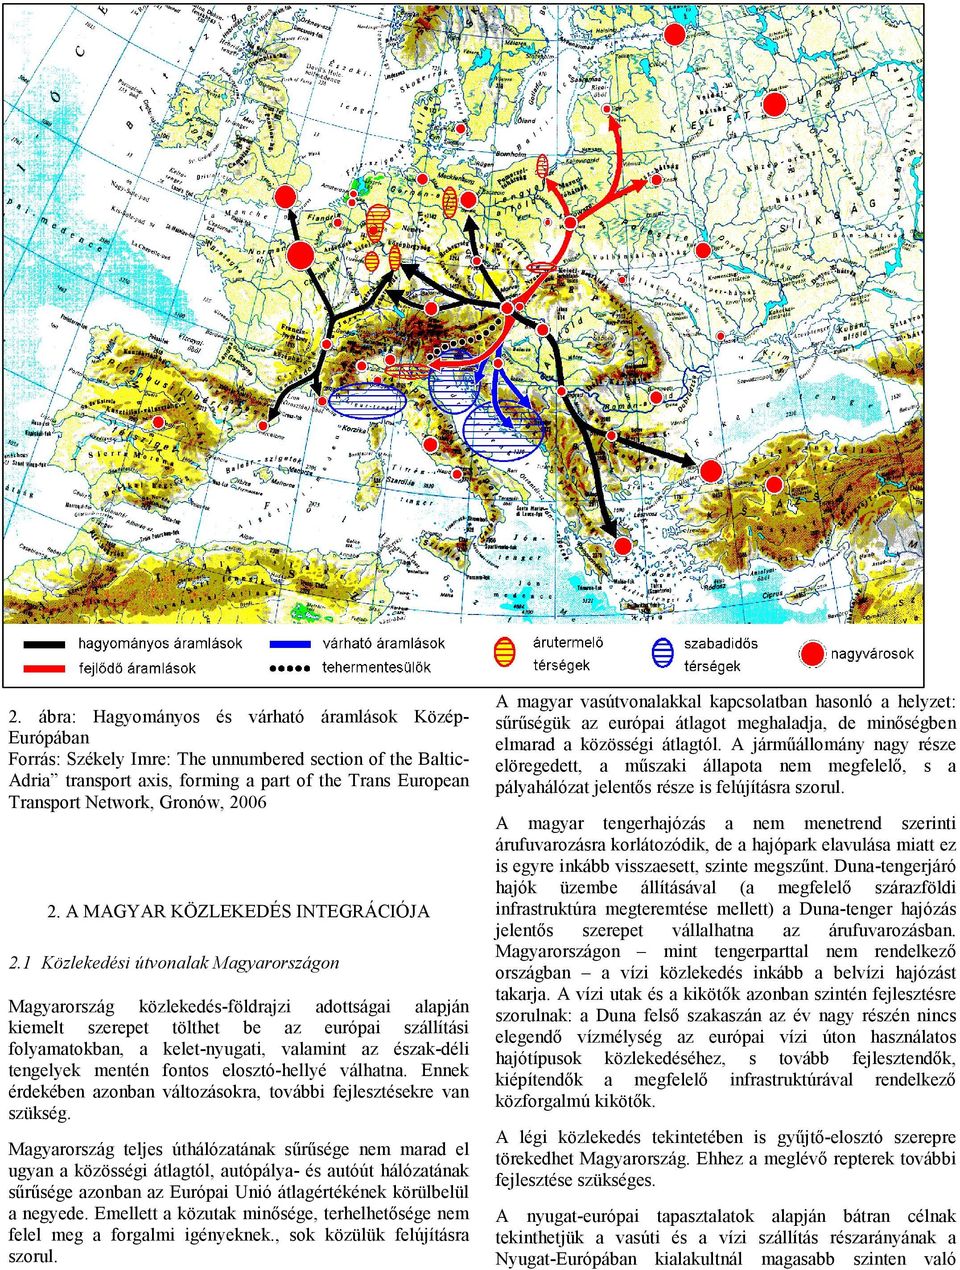 1 Közlekedési útvonalak Magyarországon Magyarország közlekedésföldrajzi adottságai alapján kiemelt szerepet tölthet be az európai szállítási folyamatokban, a keletnyugati, valamint az északdéli